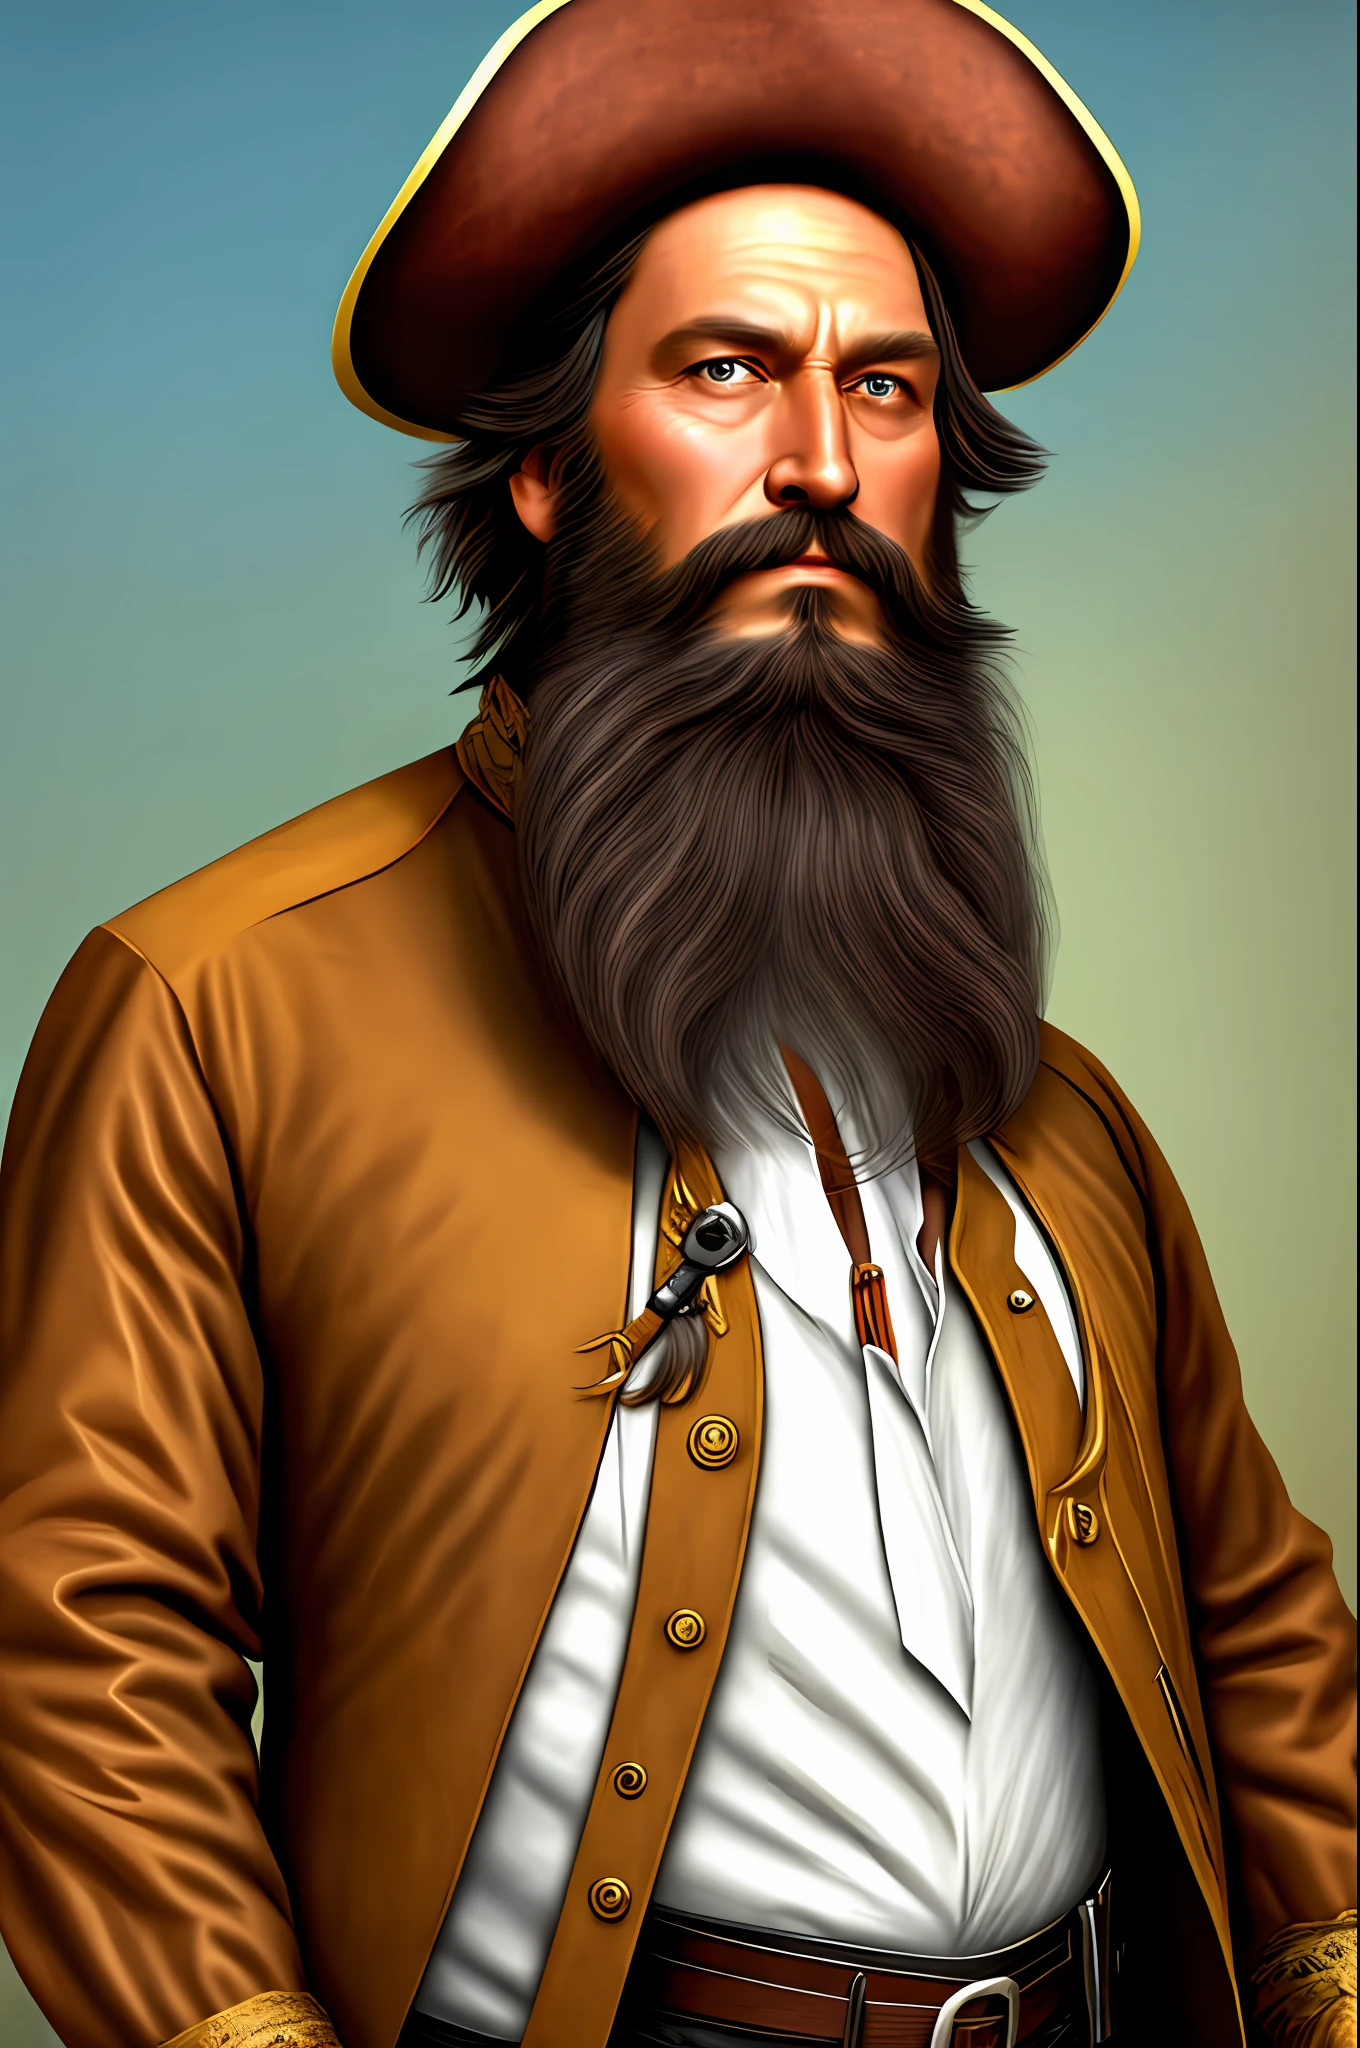 男, アメリカ人, 長い茶色の髪, 海賊, 大きなあごひげ, ブルネット, 背が高く比較的強い, 少し古い.